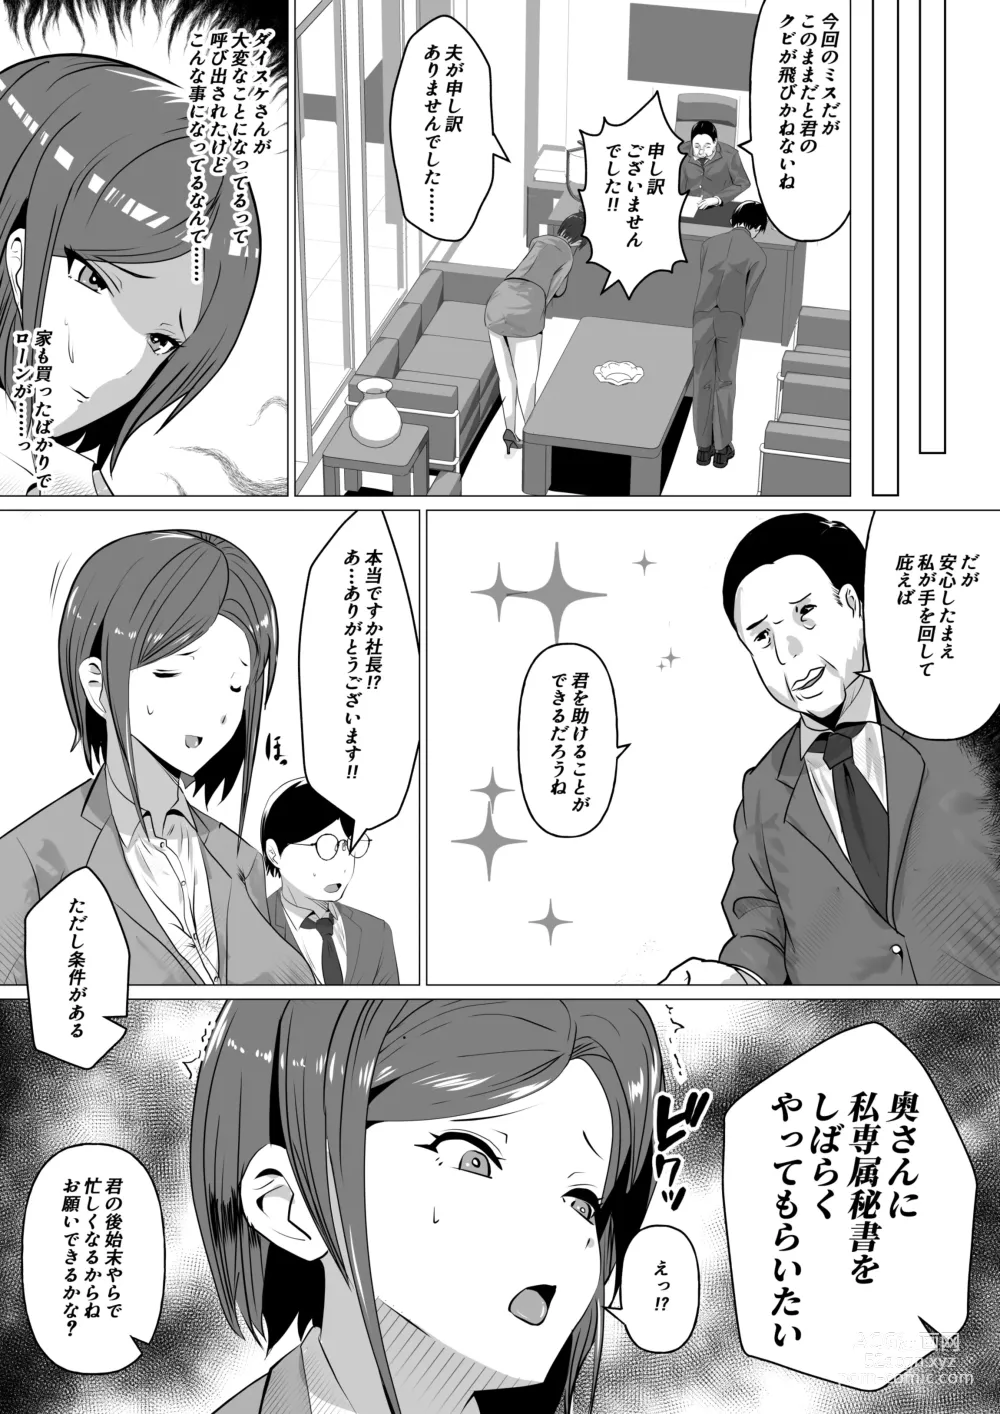 Page 3 of doujinshi Nikubenki Hisho ~Aisuru Otto o Tasukeru Tame Shachou no Nikubenki to naru Onna~